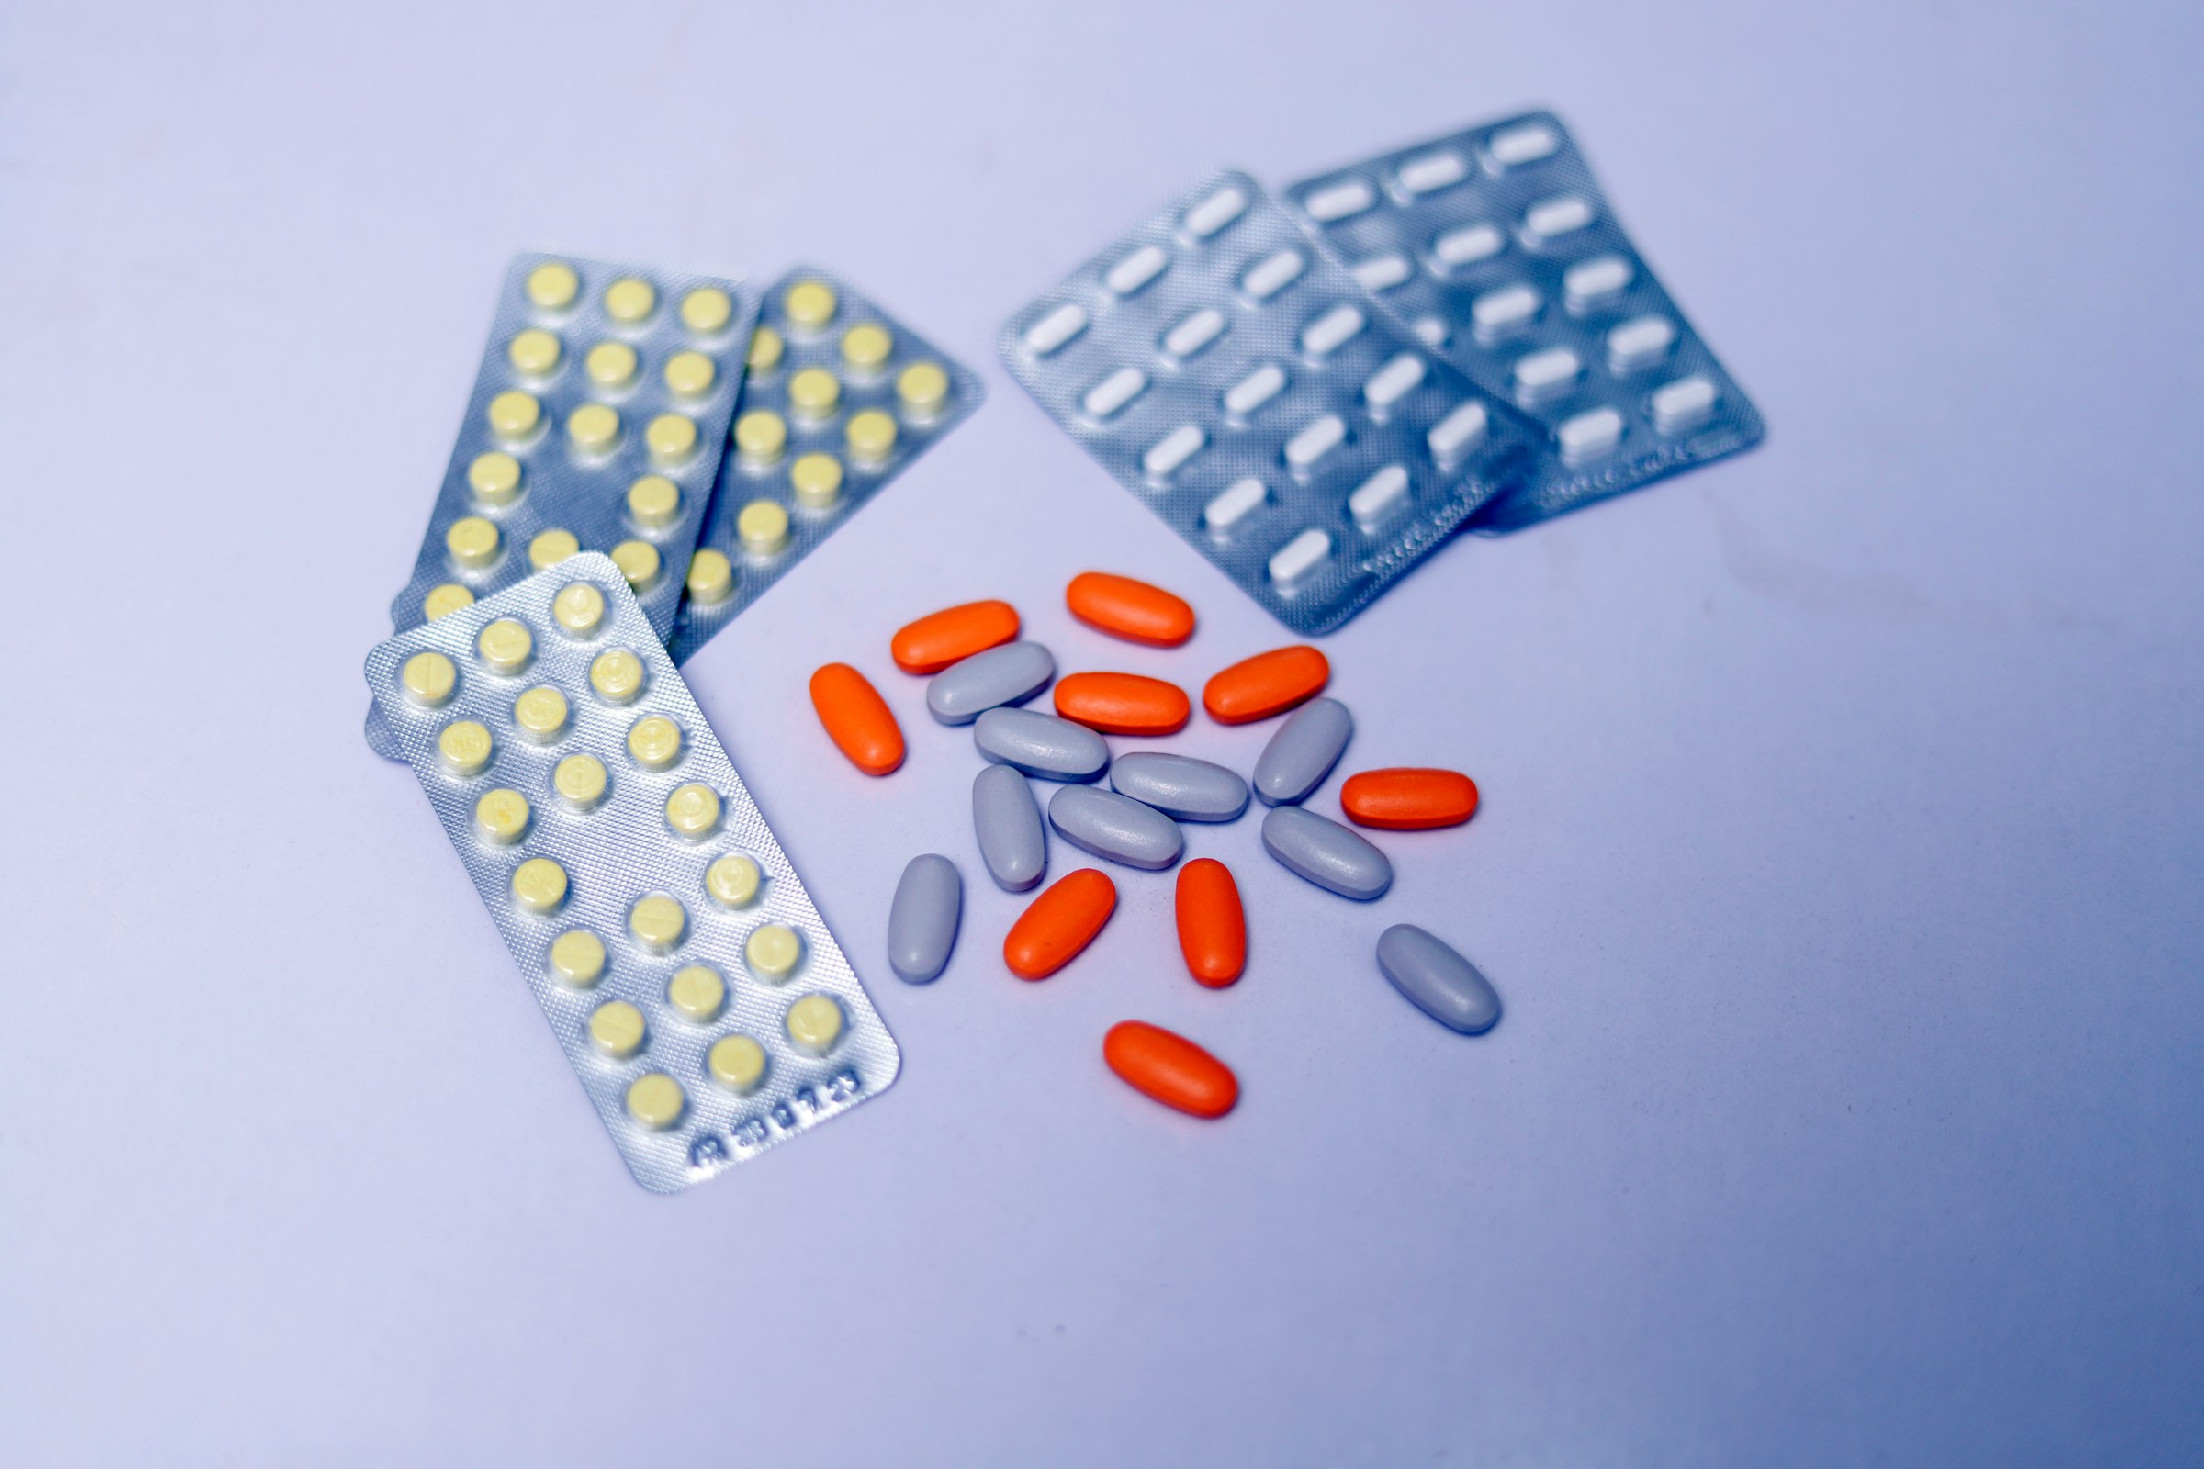 Rettentő veszélyt jelent az antibiotikumrezisztencia